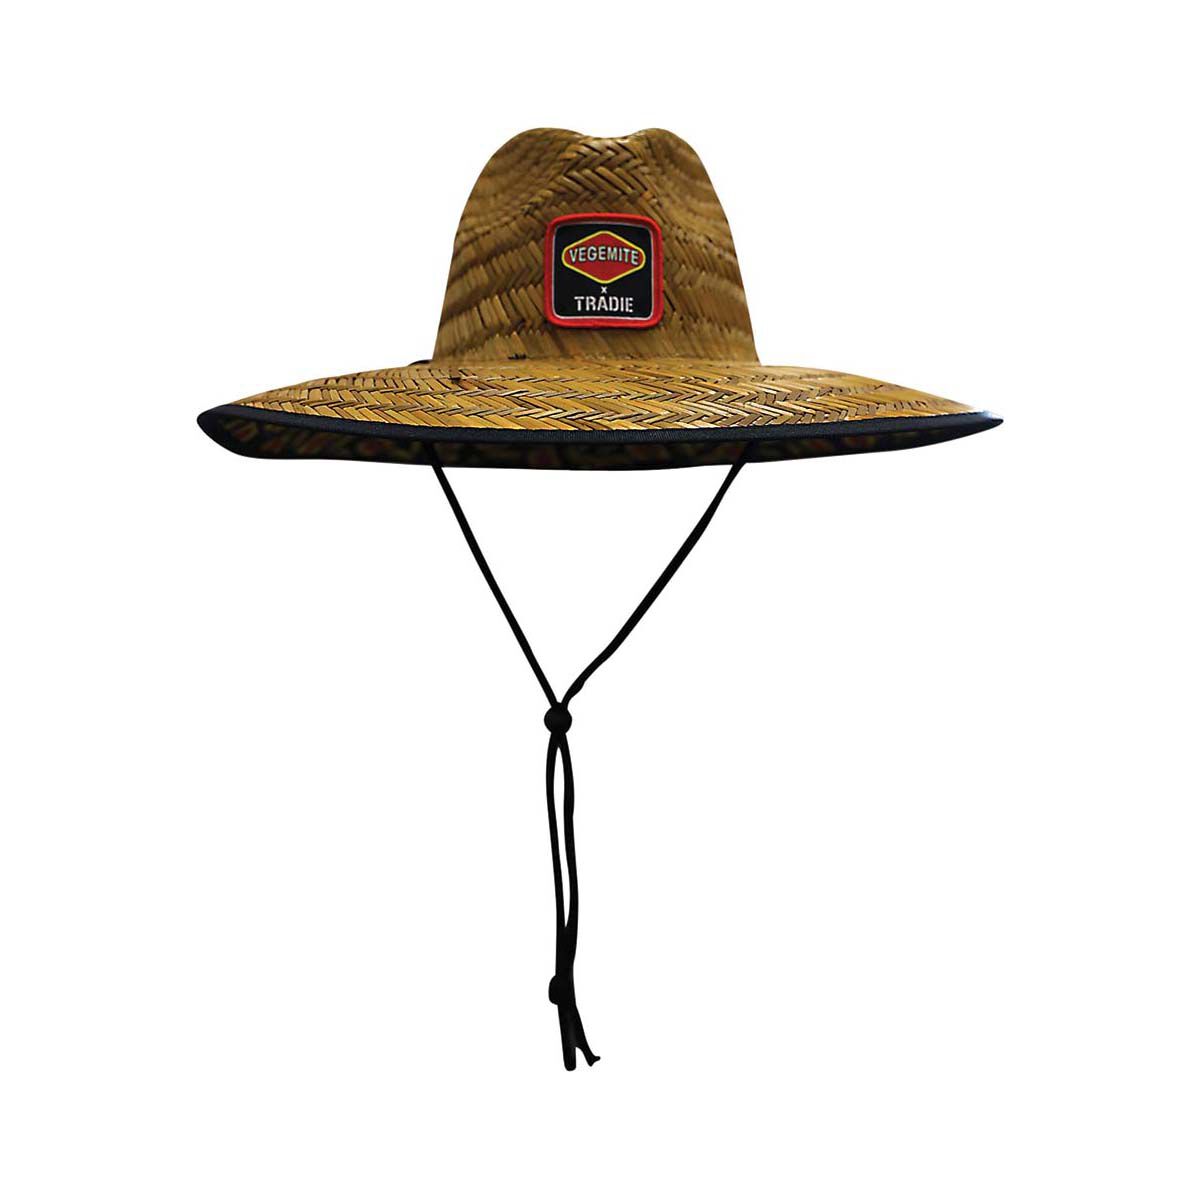 Tradie x Vegemite Men's Raining Straw Hat